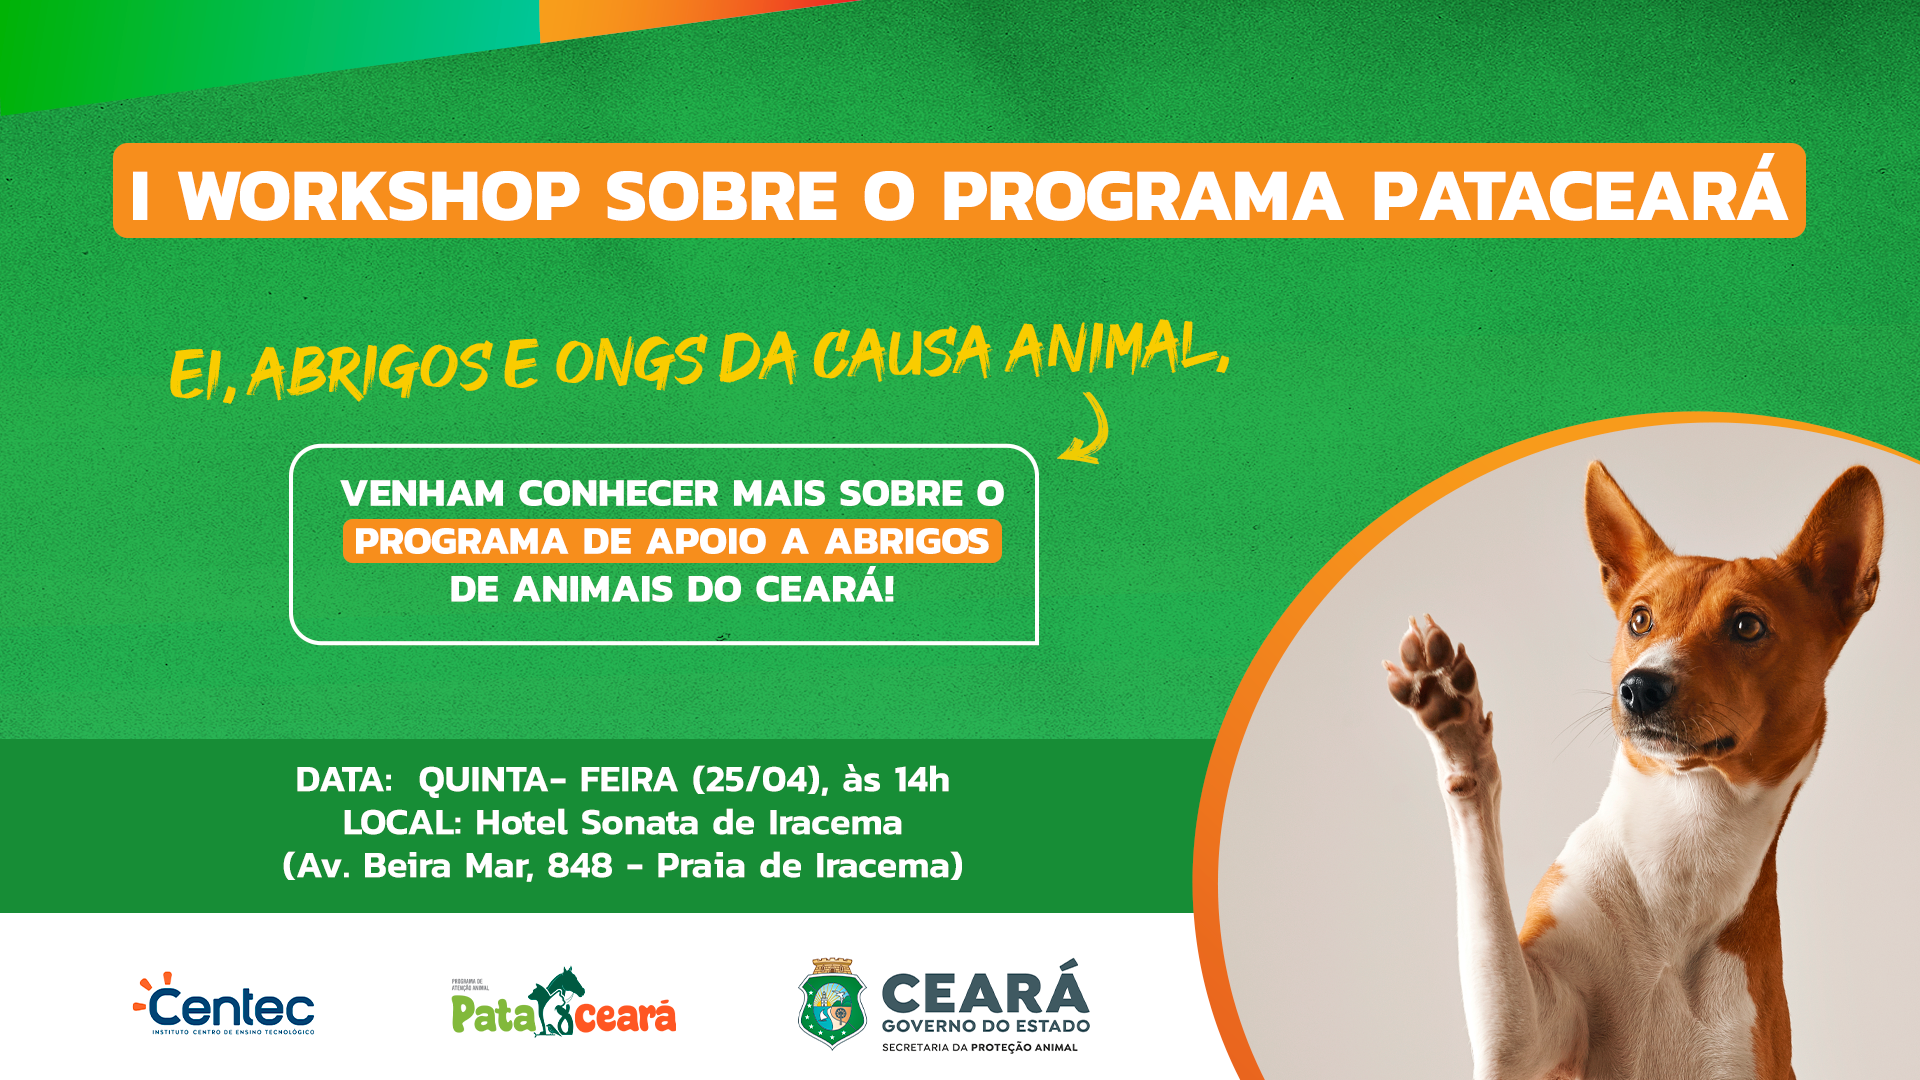 Secretaria da Proteção Animal do Ceará promove I Workshop sobre o PataCeará; entenda